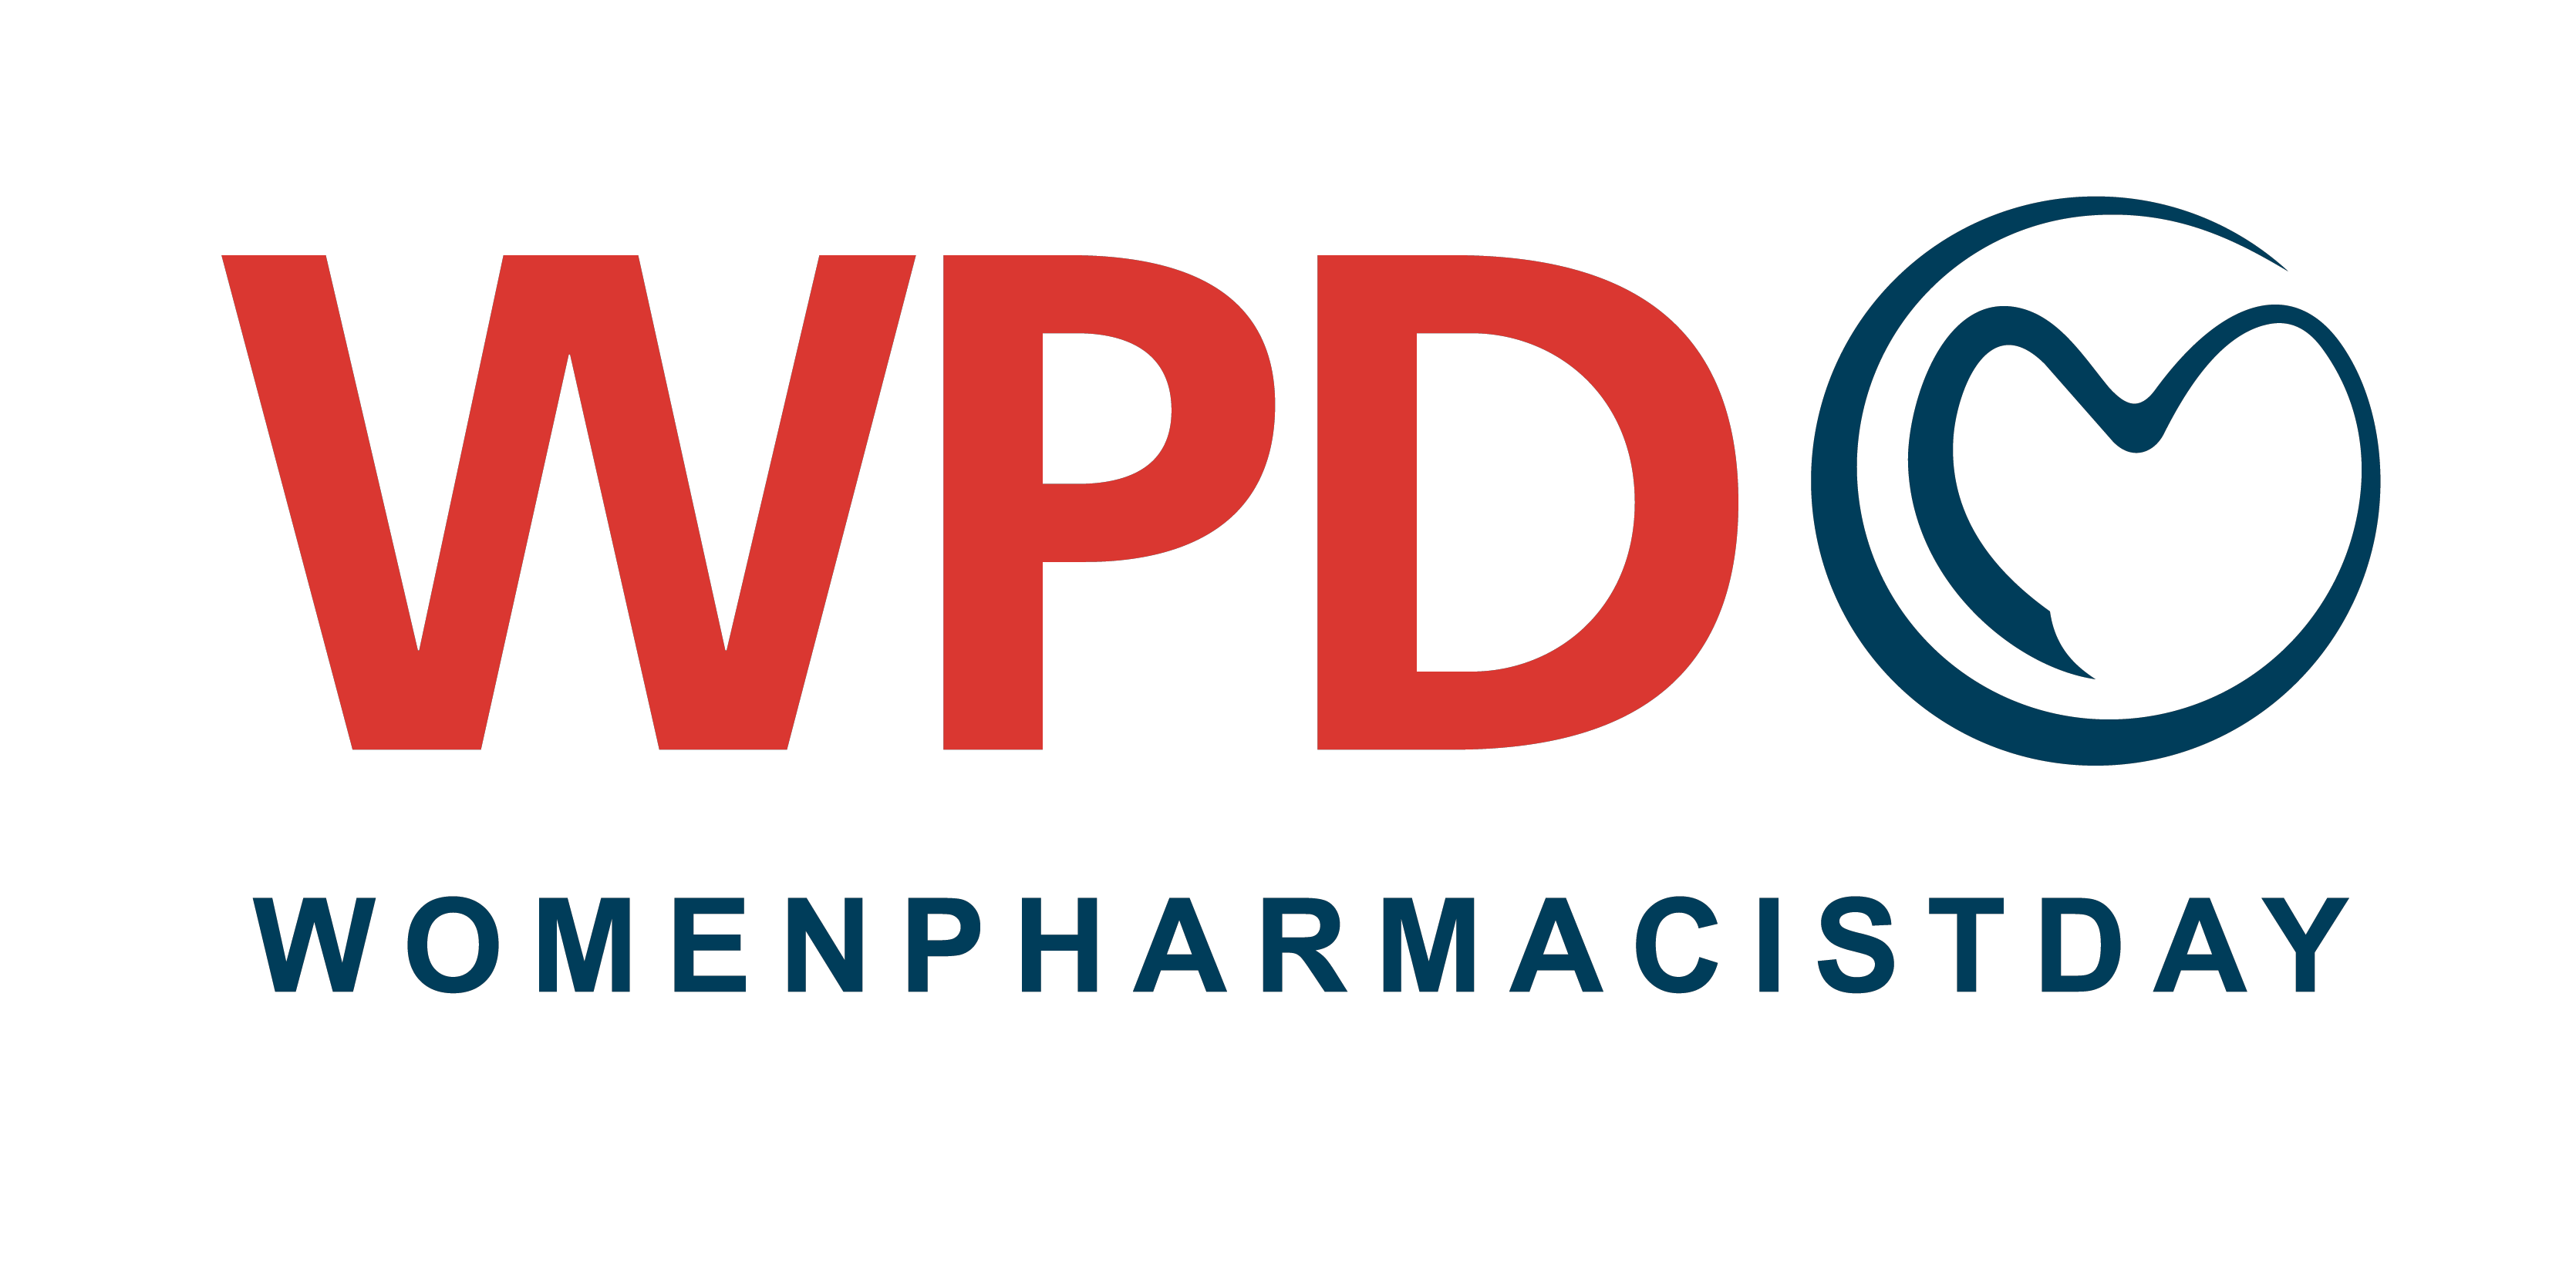 Women Pharmacist Day logo